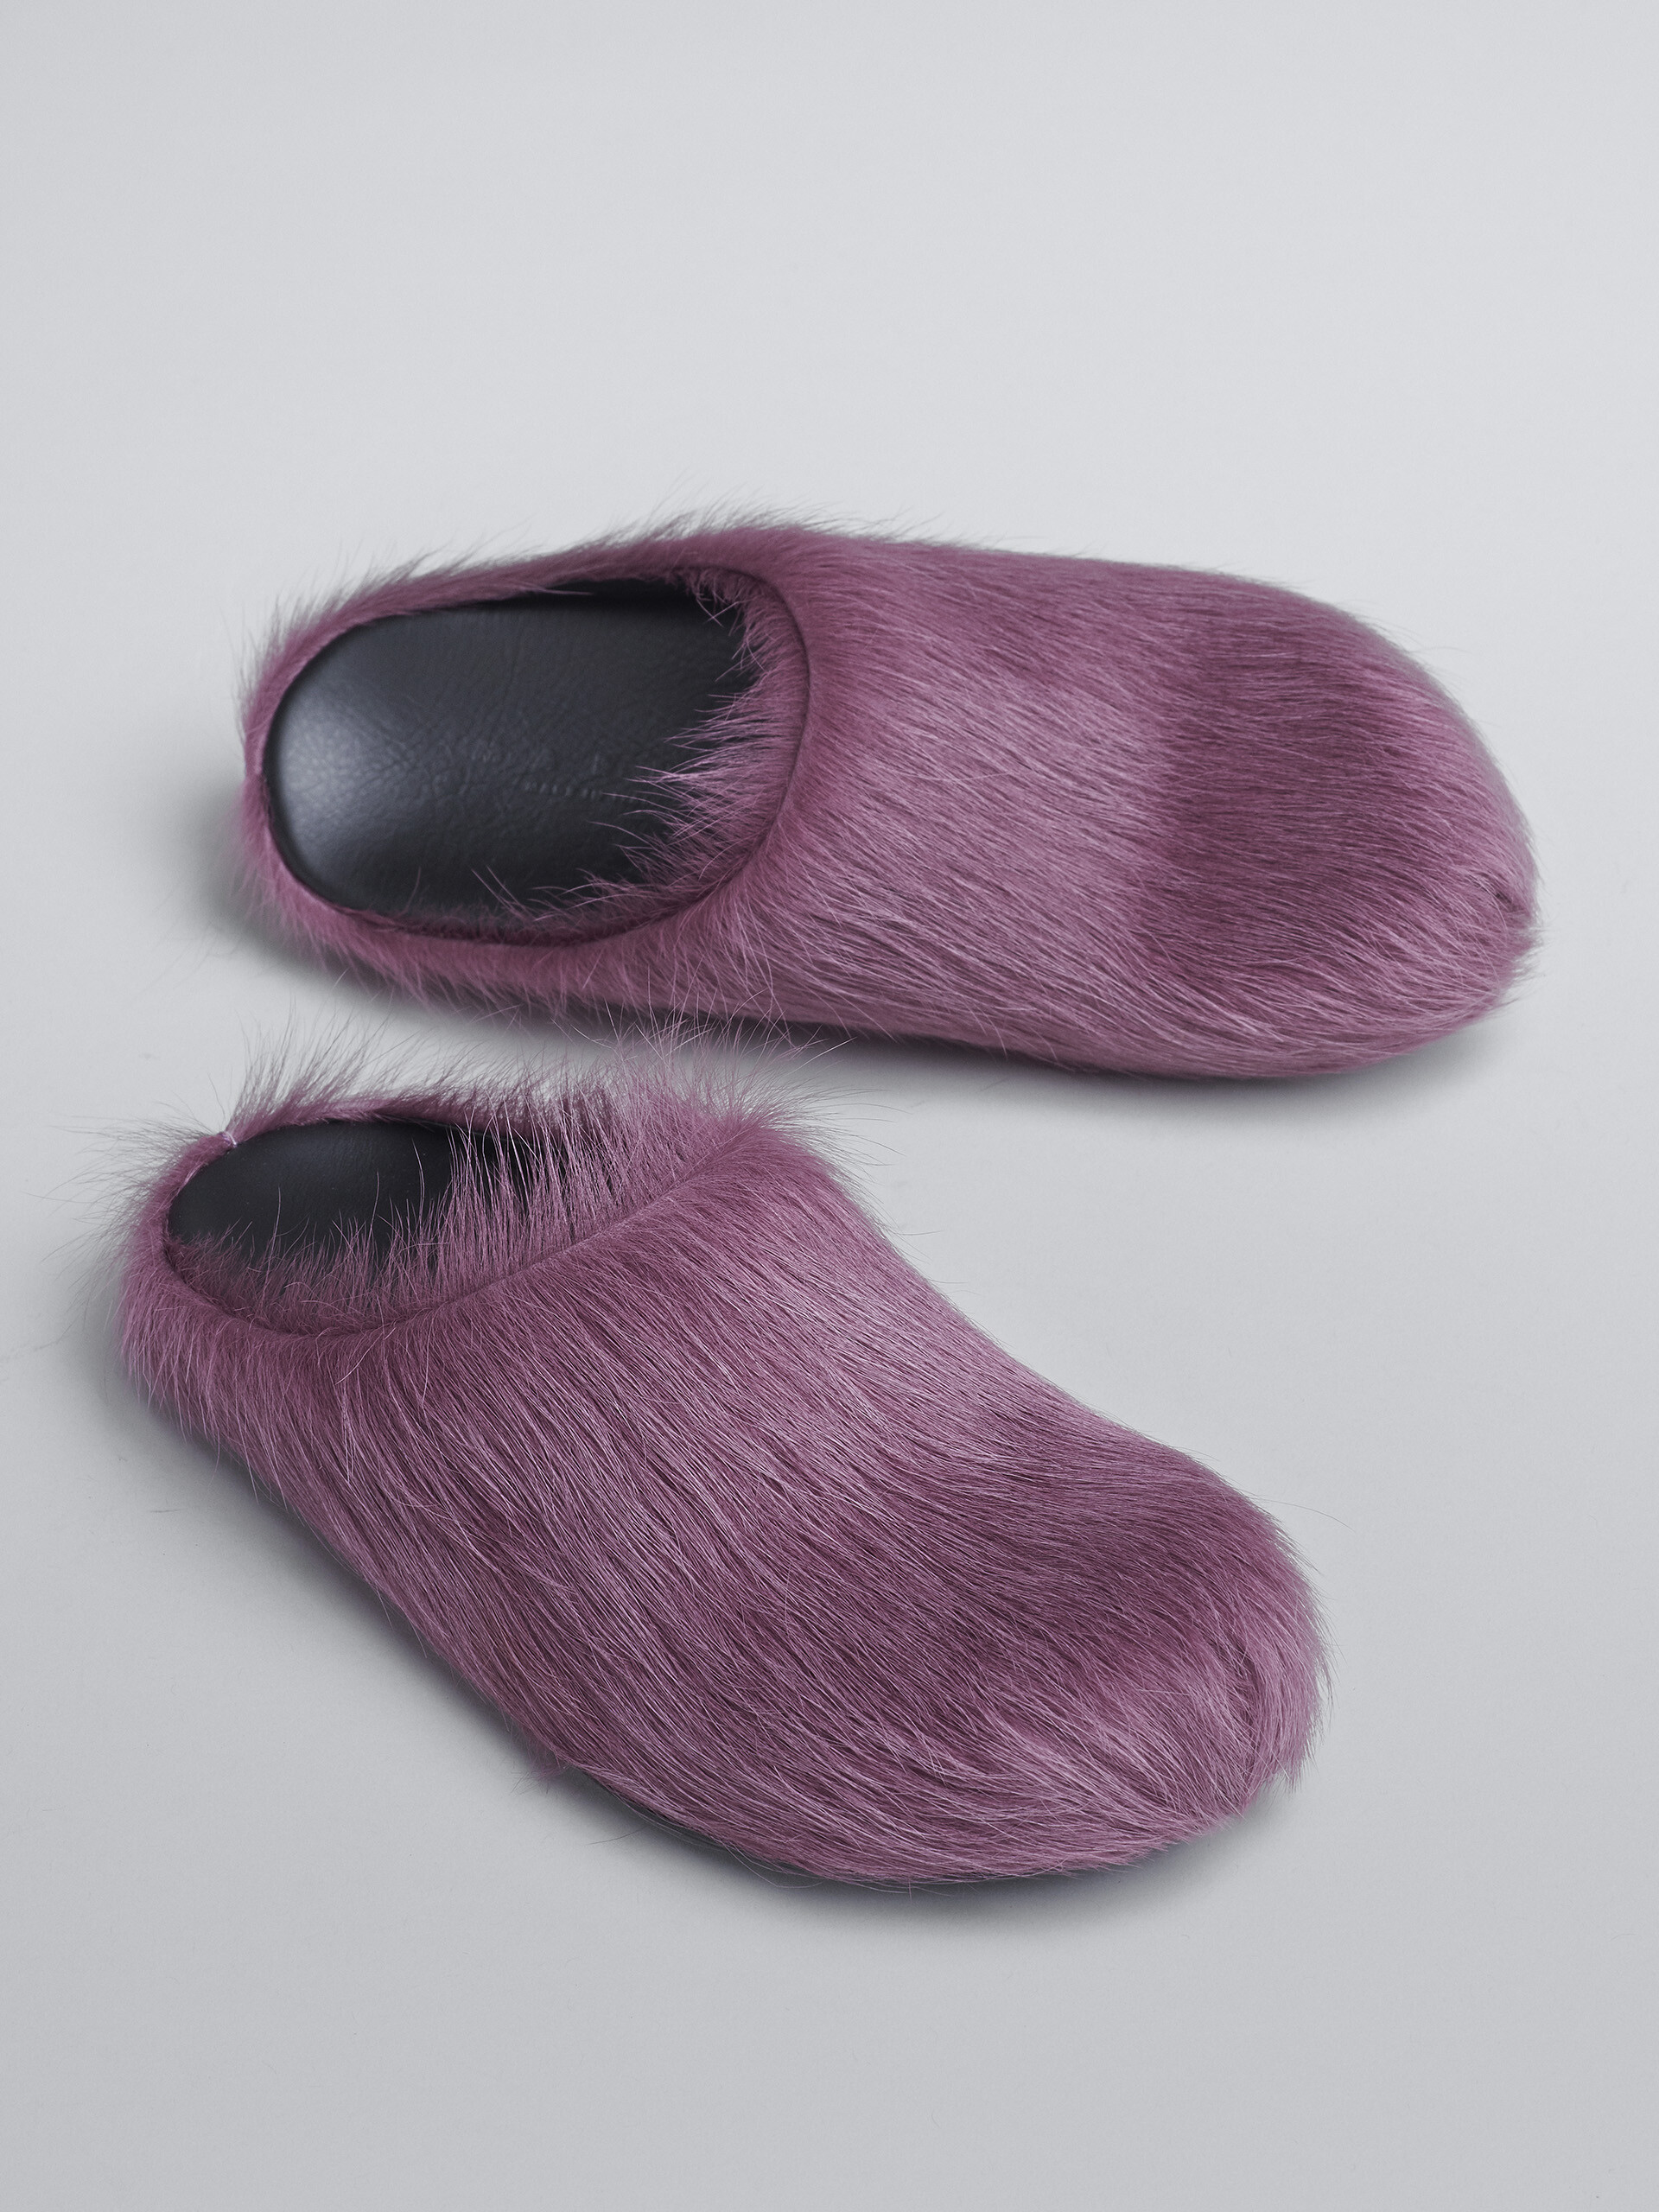 Purple long hair calfskin Fussbett sabot - Clogs - Image 5